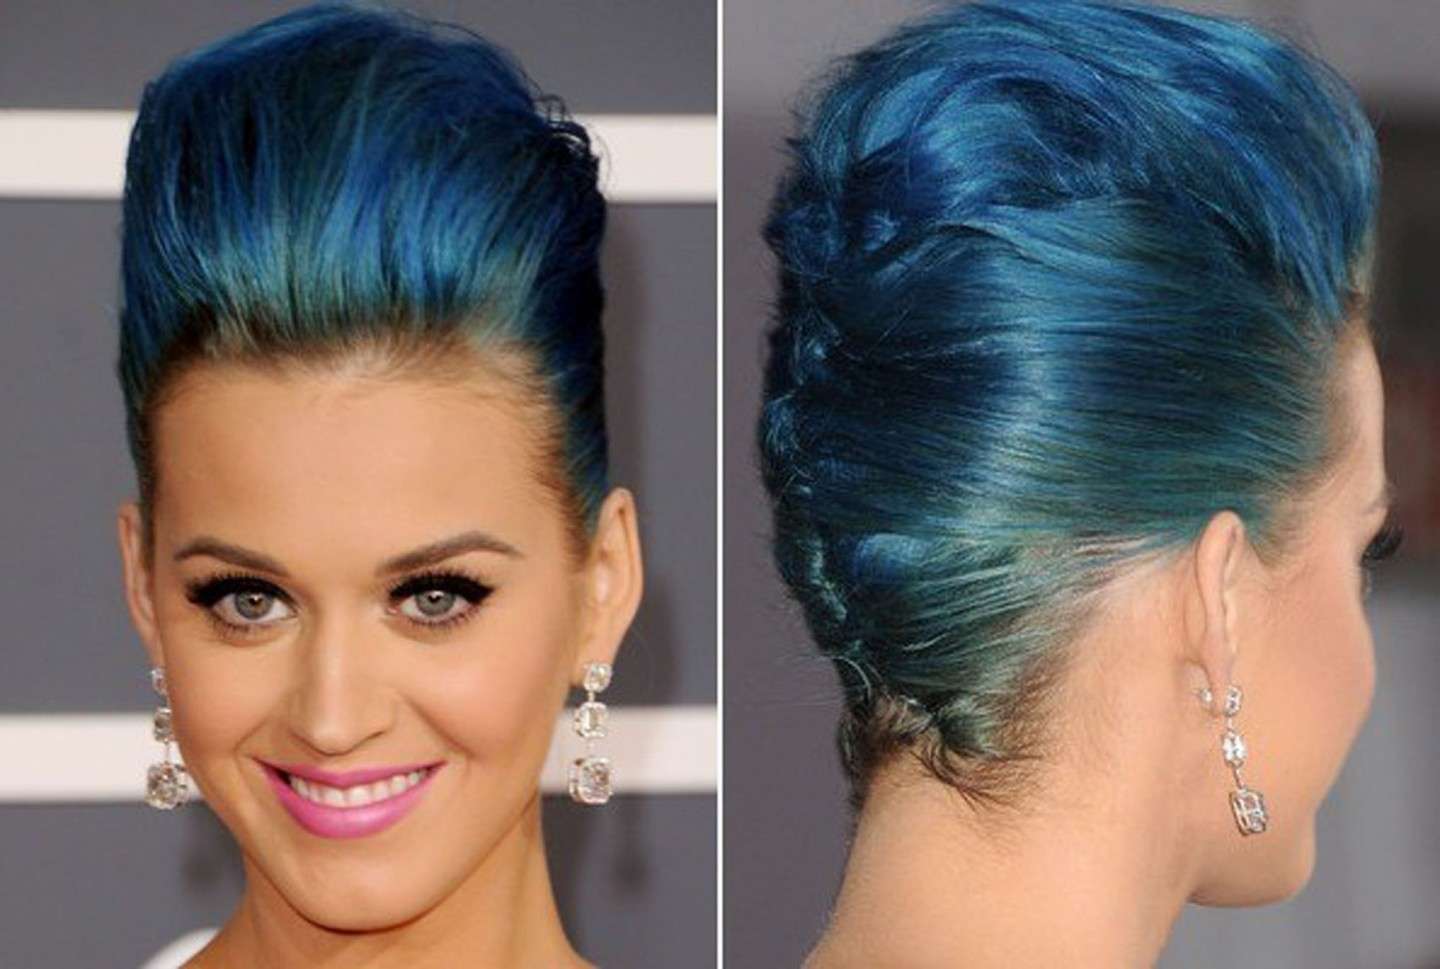 Acconciature dei vip con capelli lunghi: Katy Perry ed i capelli blu